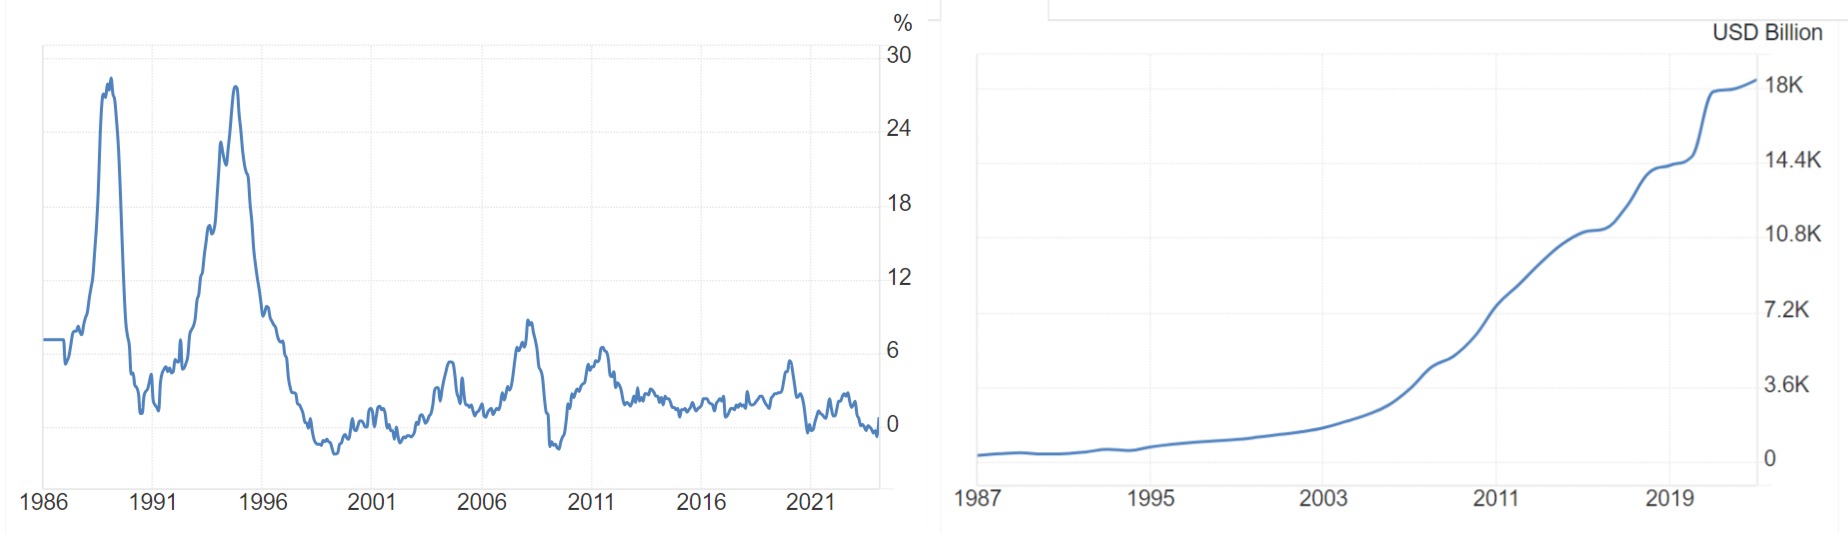 Инфляция и ВВП в Китае с 1986 по 2023 года